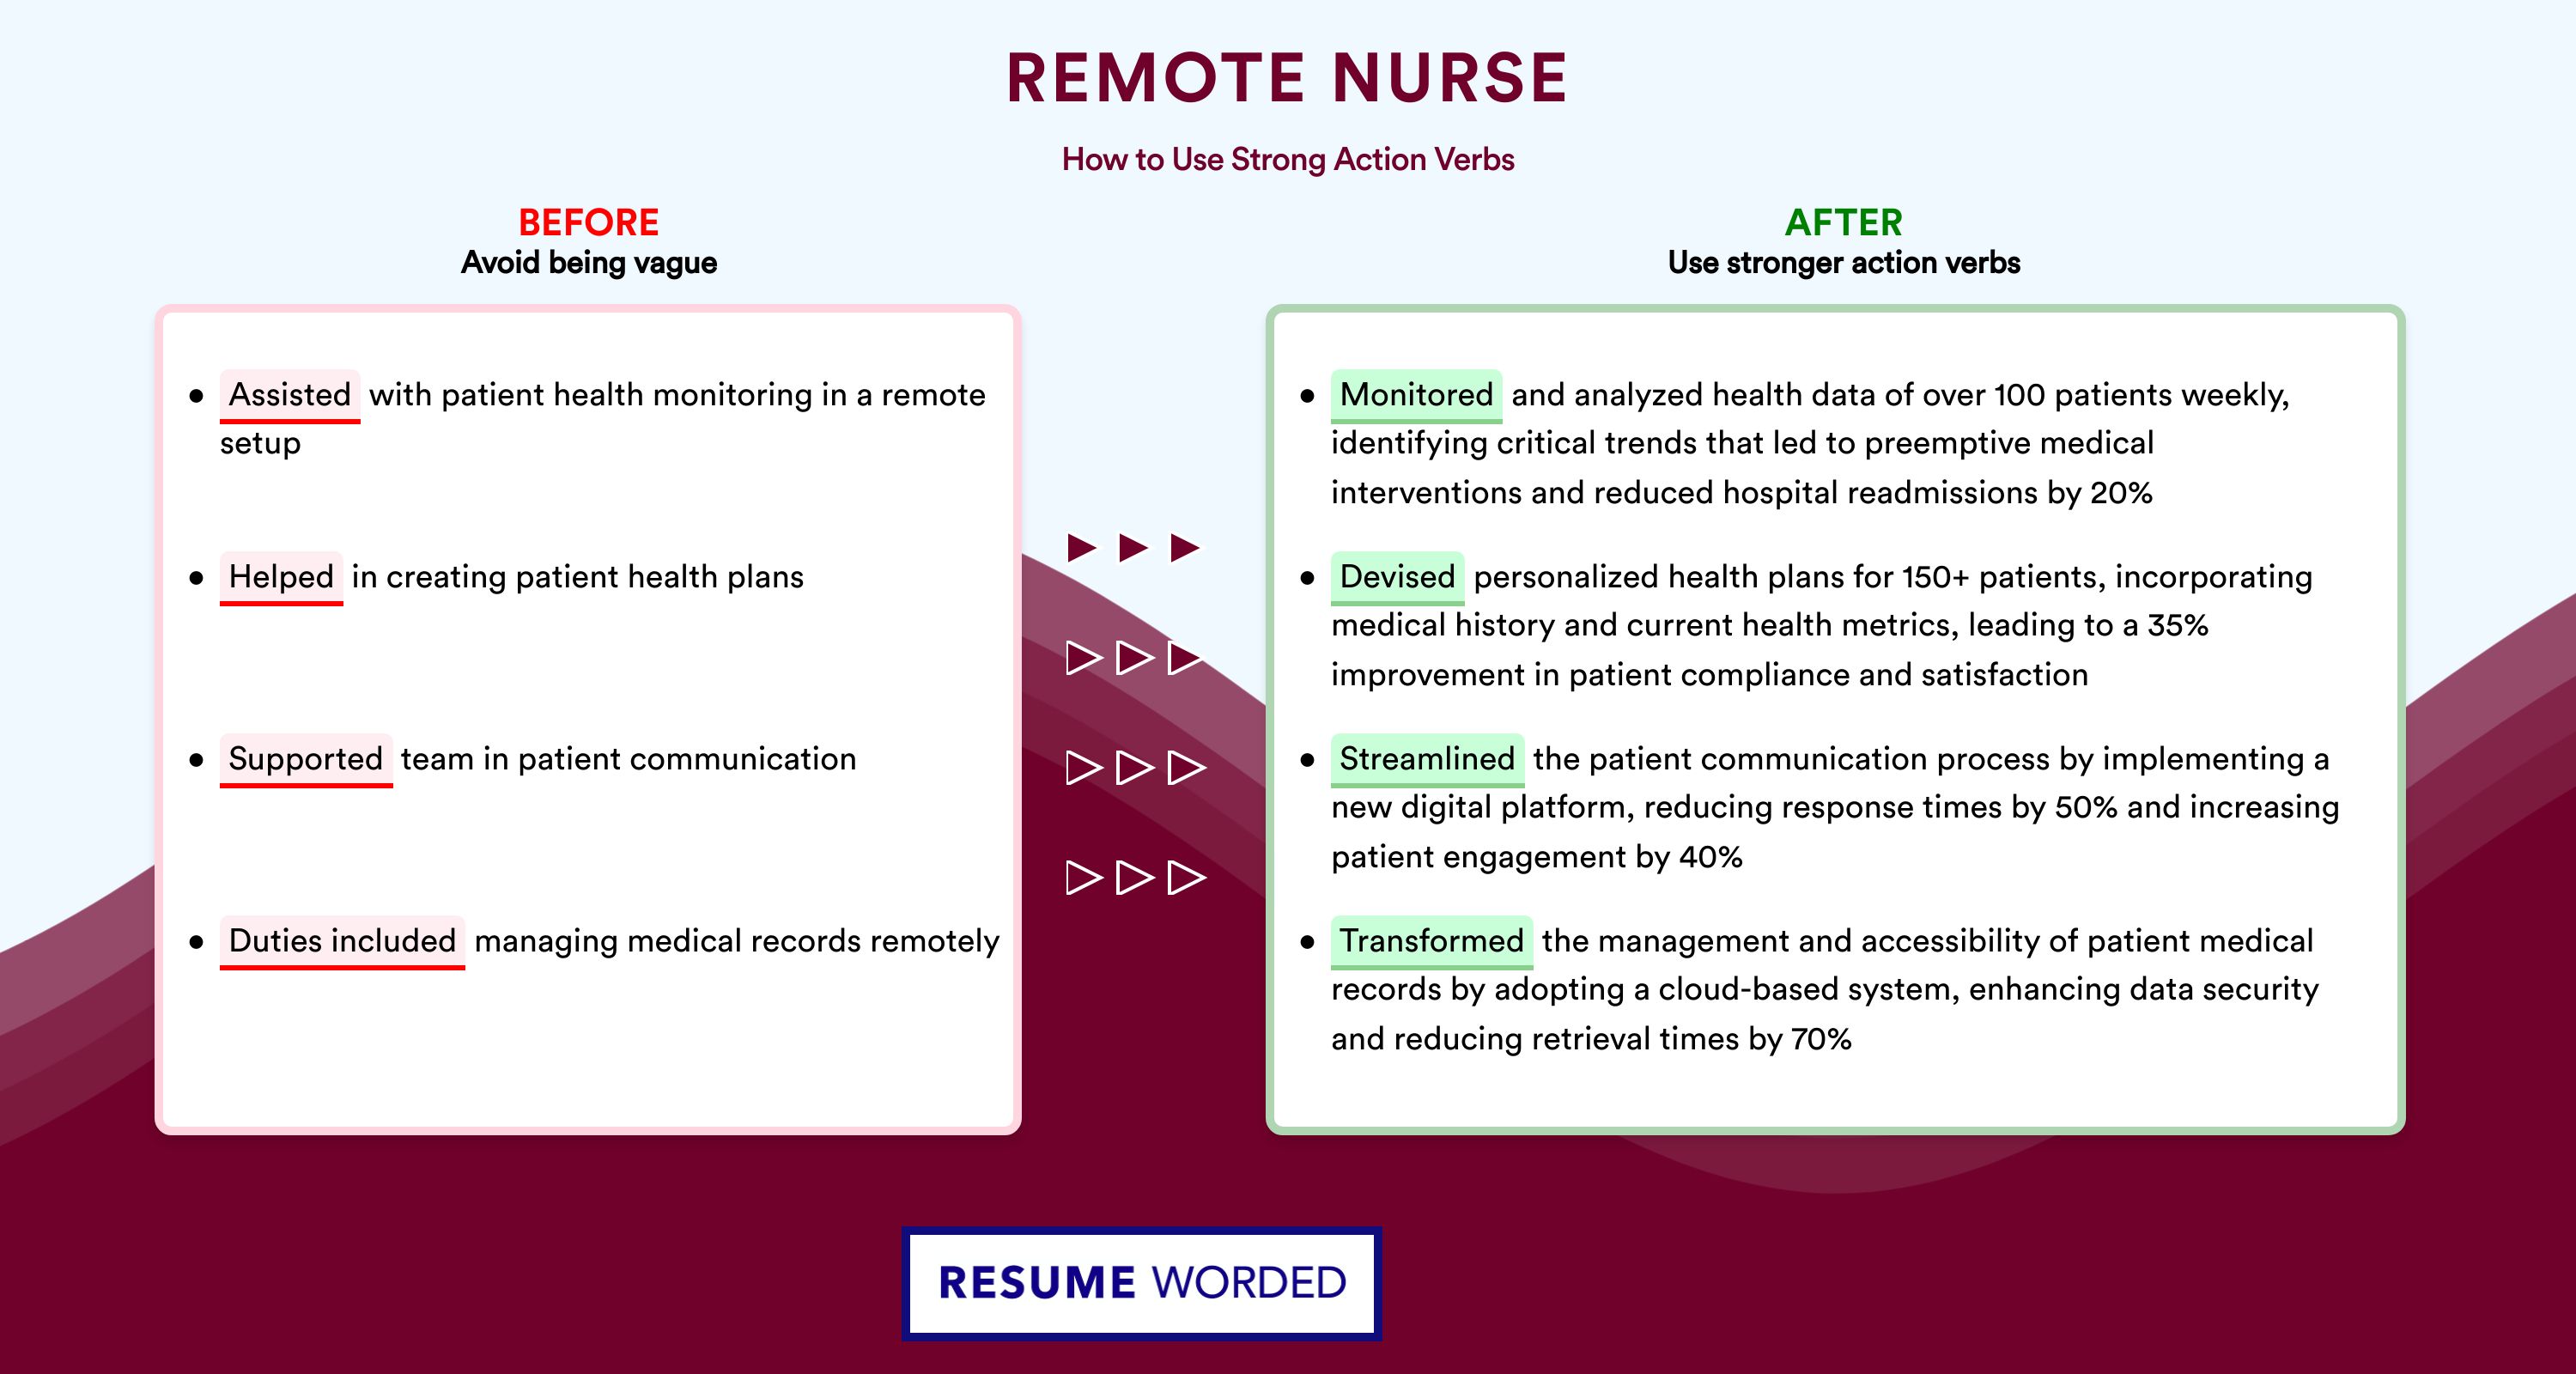 Action Verbs for Remote Nurse